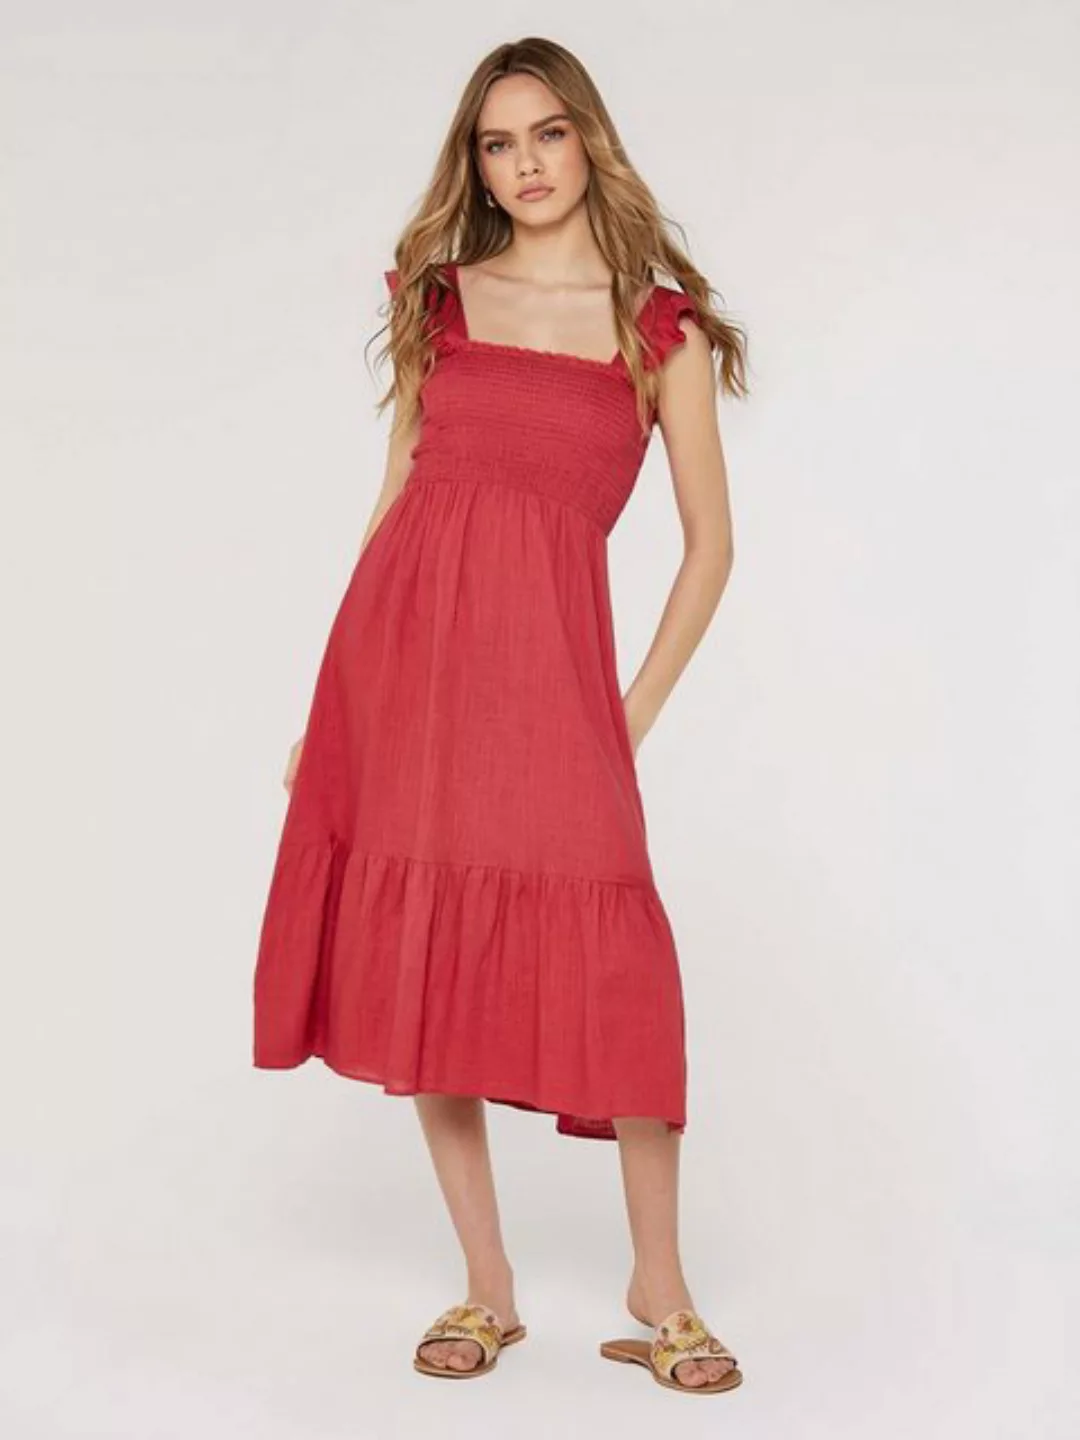 Apricot Sommerkleid in unifarben, Rüschen günstig online kaufen